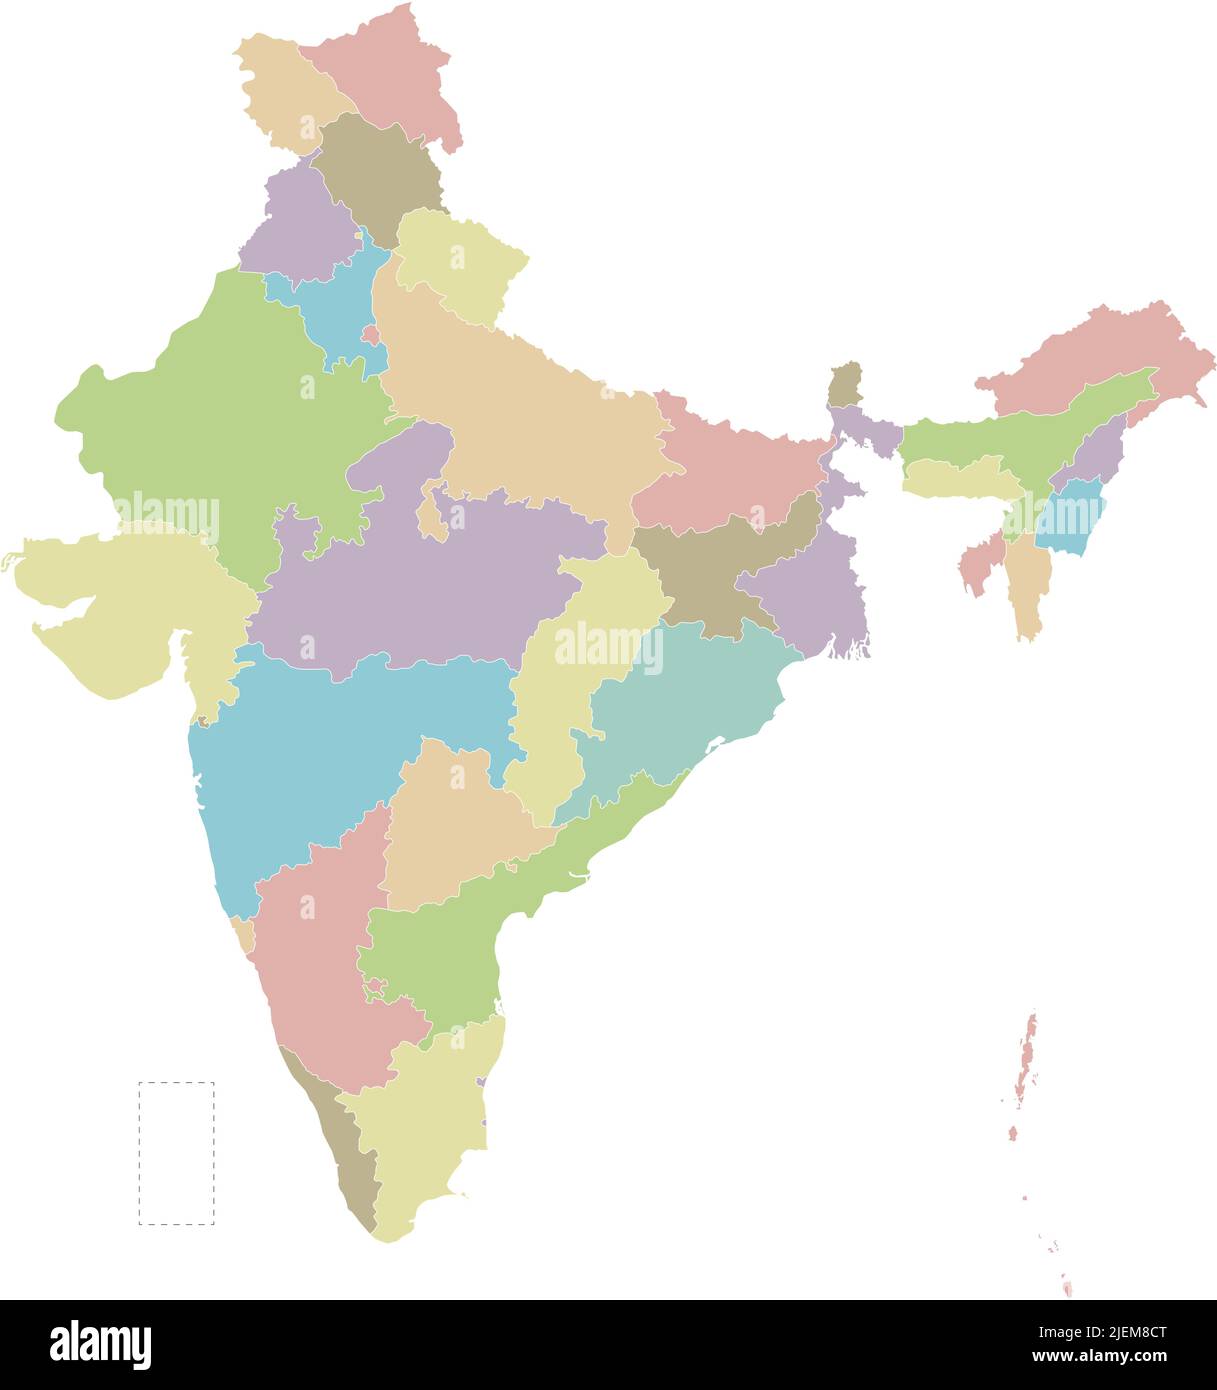 Mappa vettoriale in bianco dell'India con stati e territori e divisioni amministrative. Livelli modificabili e chiaramente etichettati. Illustrazione Vettoriale